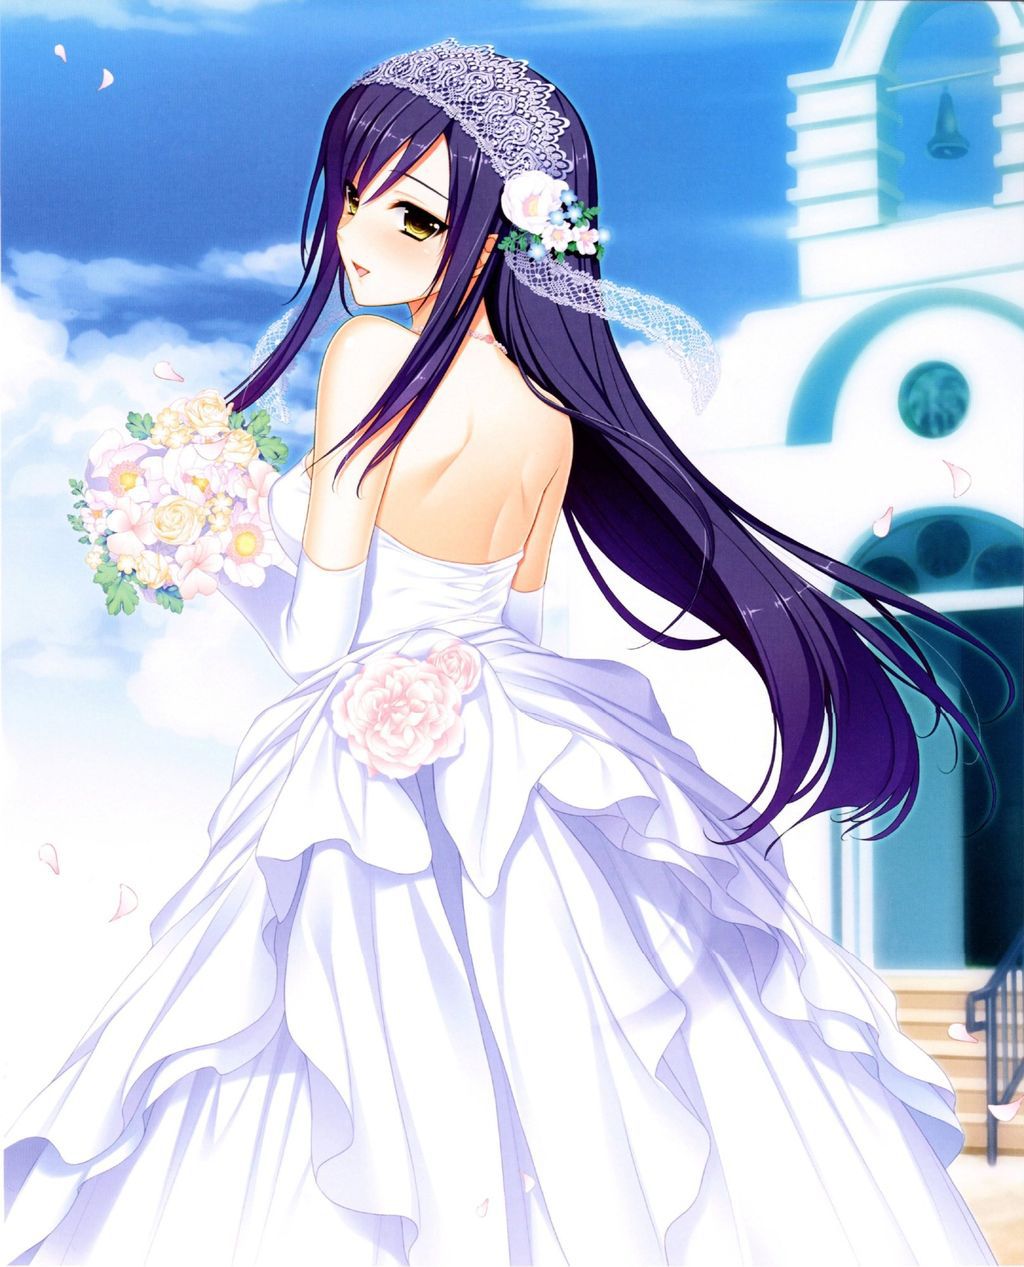 [2次] second erotic images of the girl wearing a wedding dress 5 [wedding dresses] 1